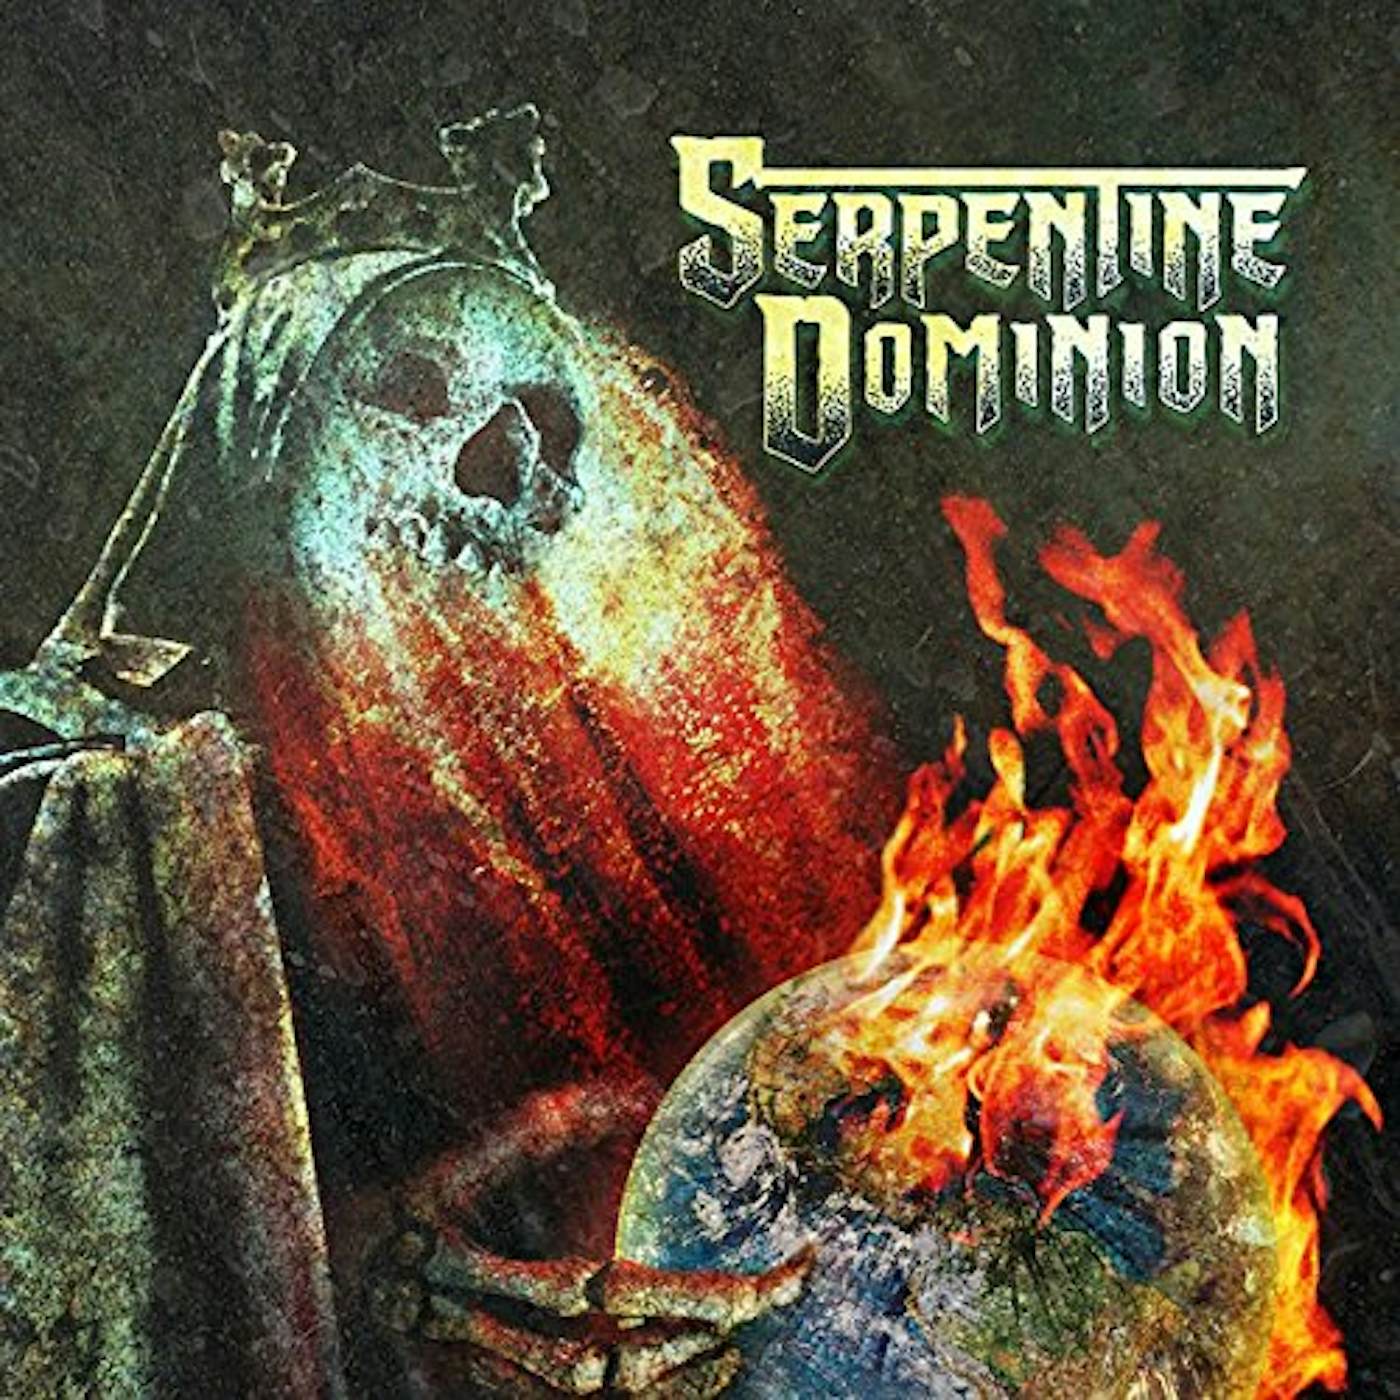 Serpentine Dominion Vinyl Record